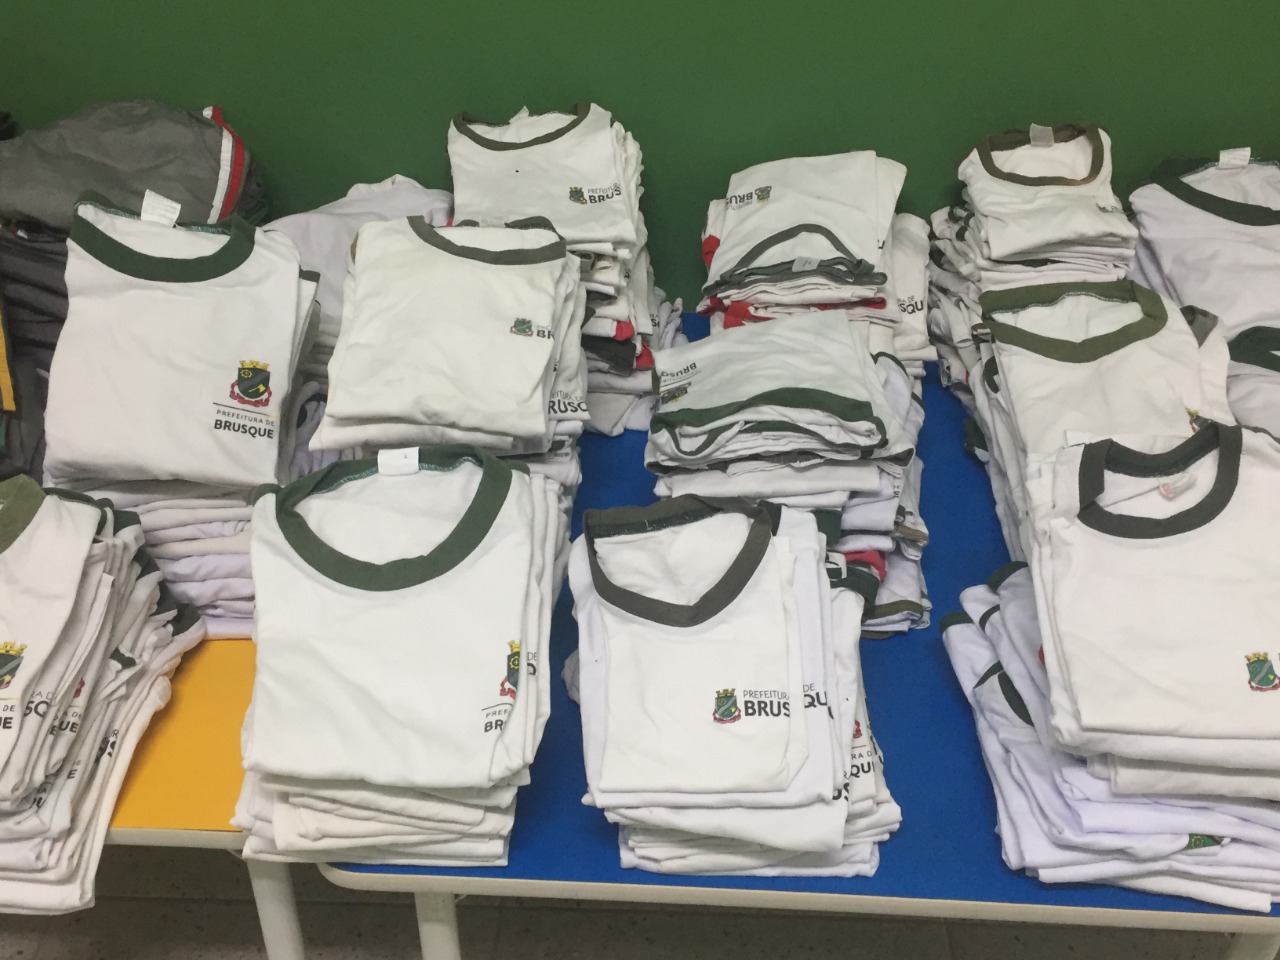 CEI Tia Trude promove o reaproveitamento de uniformes escolares